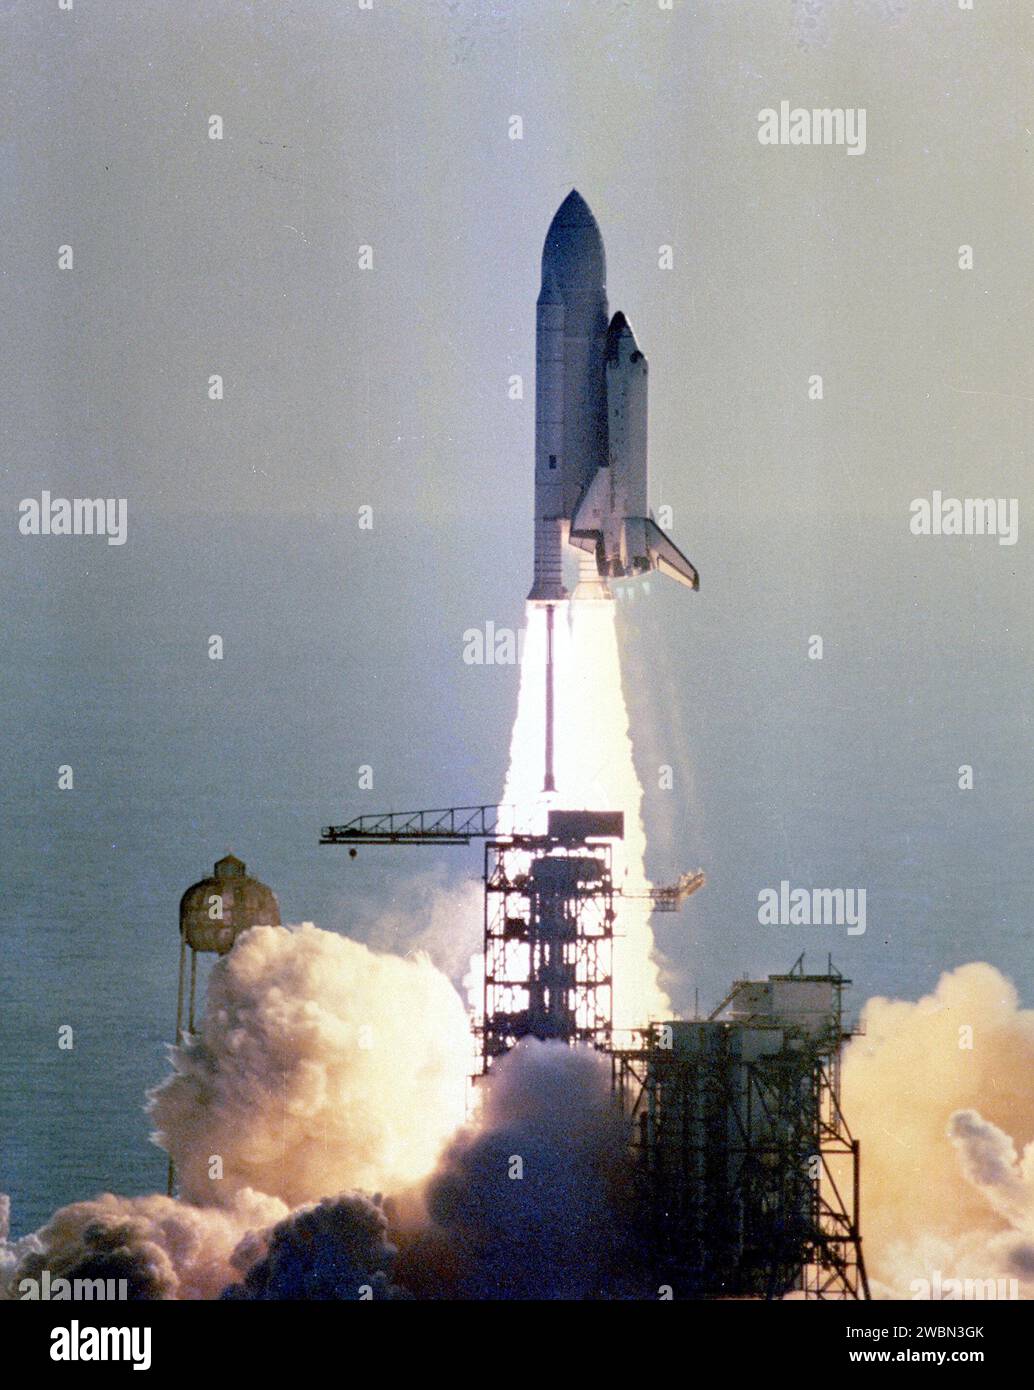 KENNEDY SPACE CENTER, FLA. -- lo Space Shuttle Columbia sorge dal Pad 39A pochi secondi dopo le 7 del mattino del 12 aprile 1981 - l'alba di una nuova era in volo spaziale. A bordo, gli astronauti John Young e Bob Crippen viaggiano verso l'orbita dopo il successo del decollo della prima missione dello Space Shuttle. I piani di missione prevedono che il Columbia rimanga in orbita per circa 54 ore, durante le quali gli astronauti Young e Criipen eseguiranno una serie di attività di checkout progettate per testare i sistemi dello Space Shuttle nello spazio per la prima volta. Il Columbia dovrebbe planare verso un atterraggio simile a un aereo a Edwards Foto Stock